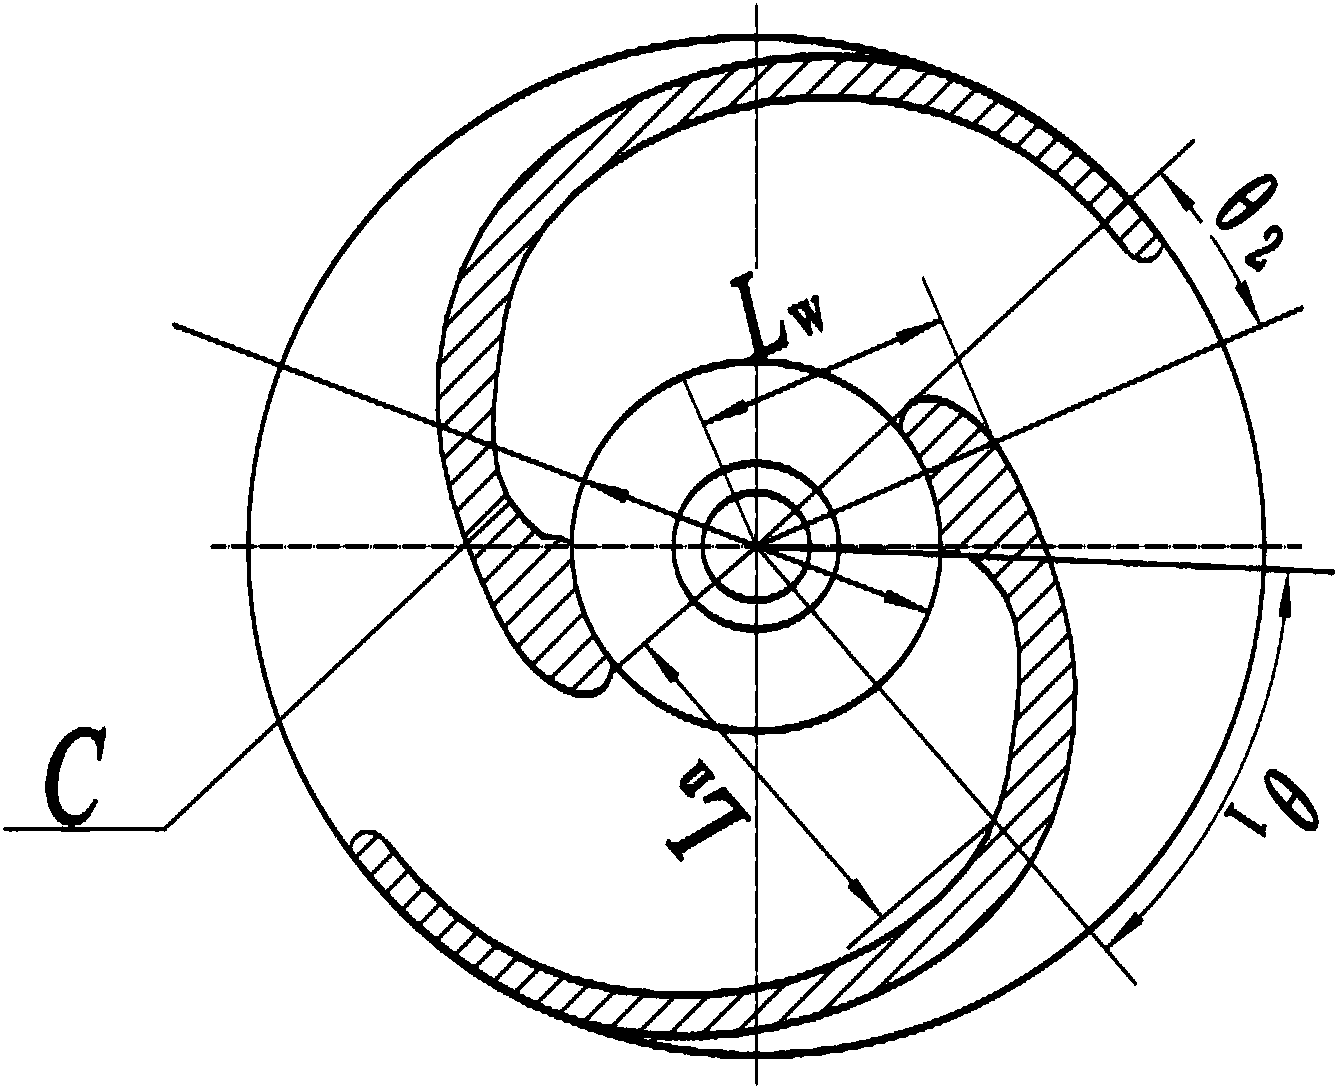 本发明涉及一种双流道超空化离心泵叶轮,该叶轮主要由叶片(1),叶轮前